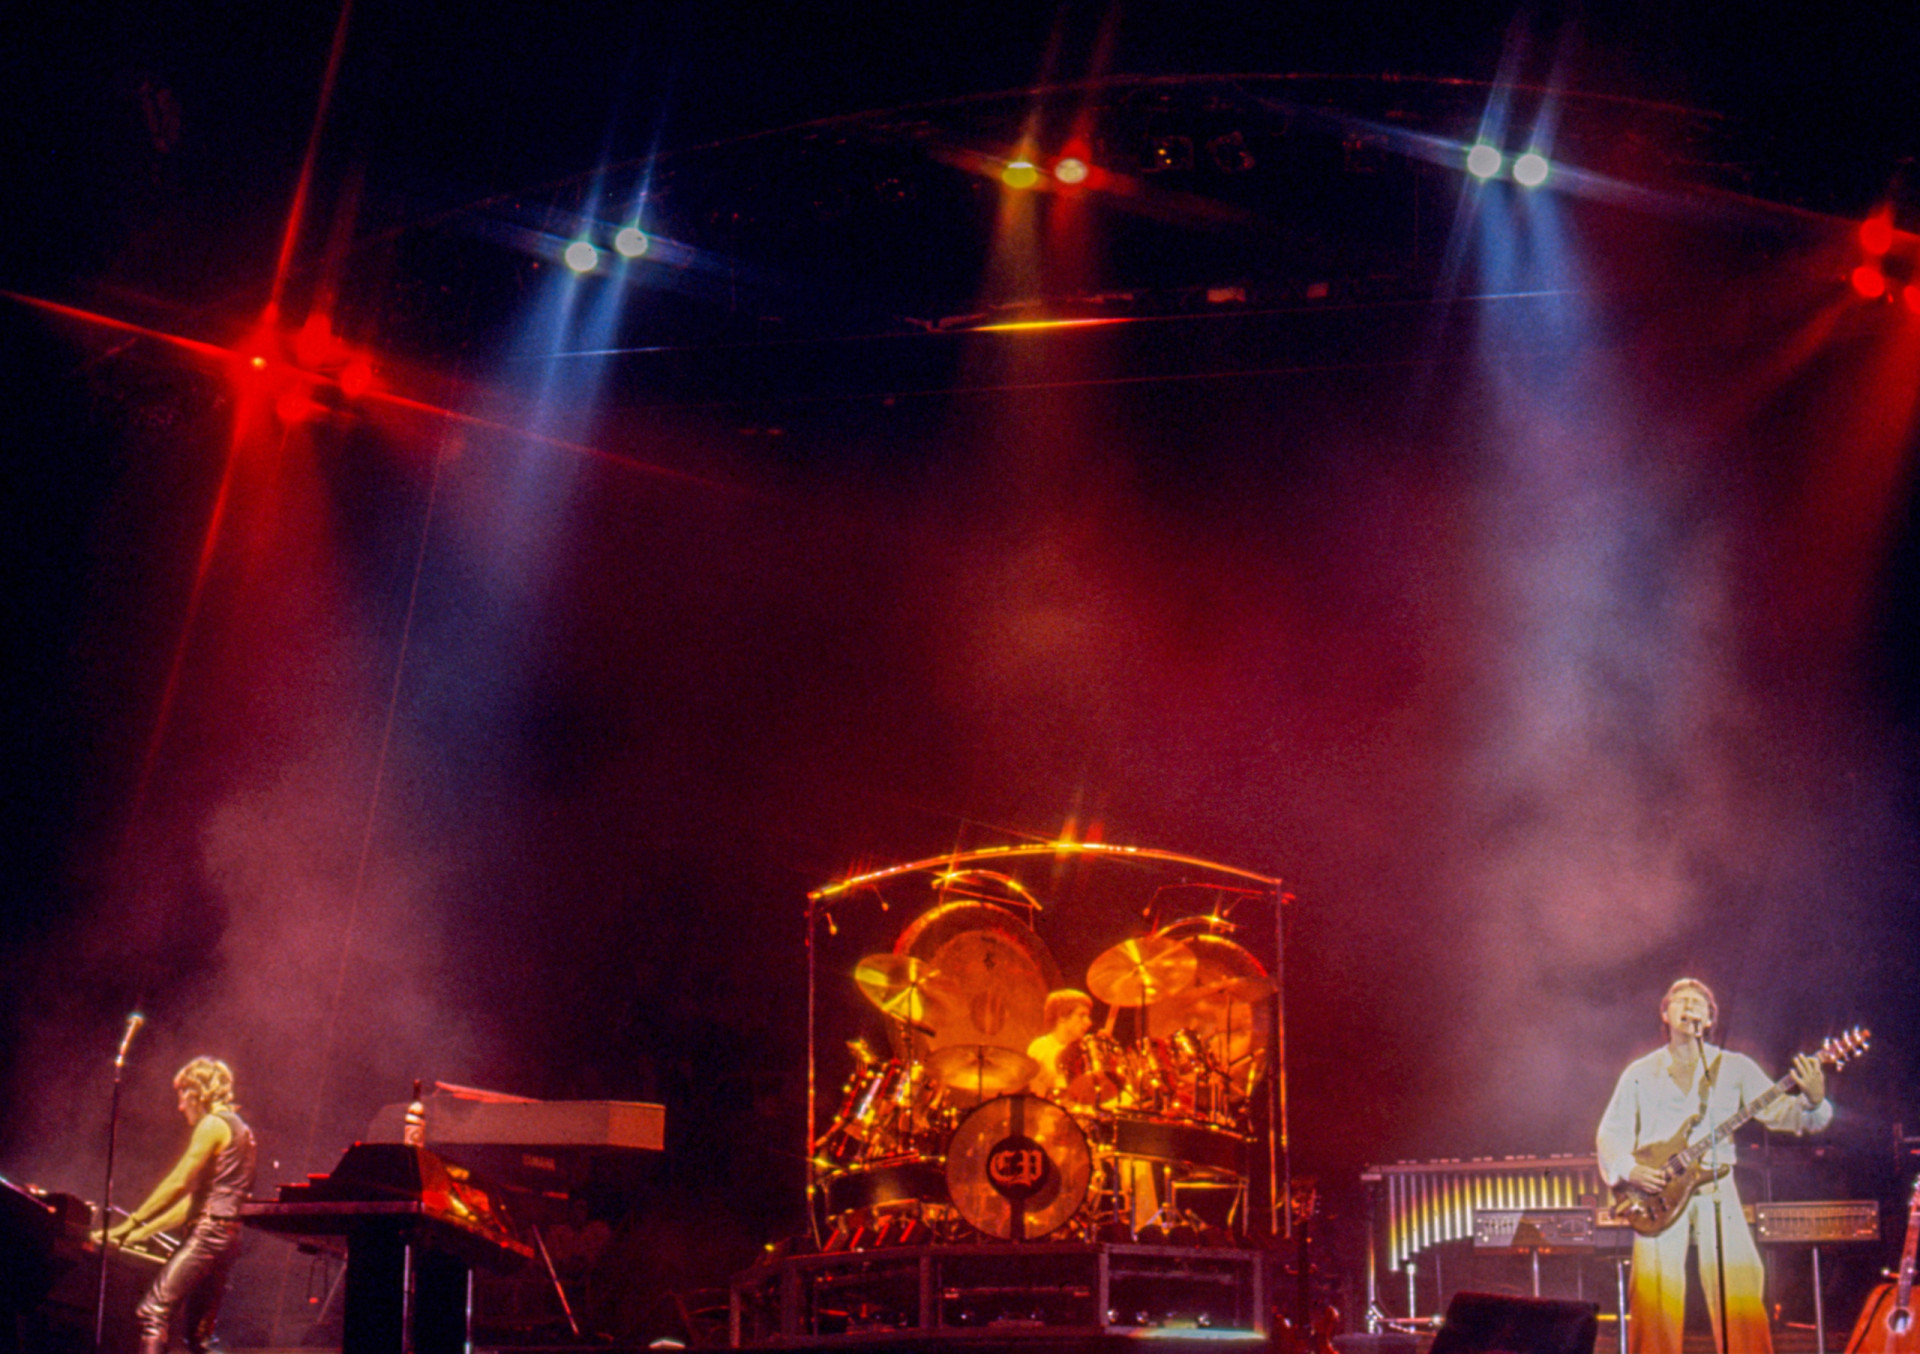 <p>Eine der ersten Supergroups des Progressive Rock war Emerson, Lake & Palmer. Das Trio, bestehend aus Keith Emerson, Greg Lake und Carl Palmer, war eine der beliebtesten und kommerziell erfolgreichsten Progrock-Gruppen der 1970er Jahre. Bekannt für ihre komplexen Bearbeitungen klassischer Musik, gemischt mit Jazz und symphonischen Rockelementen, trugen ELP mit Alben wie "Pictures at an Exhibition" (1971) und "Brain Salad Surgery" (1973) zur Definition des Genres bei.</p>